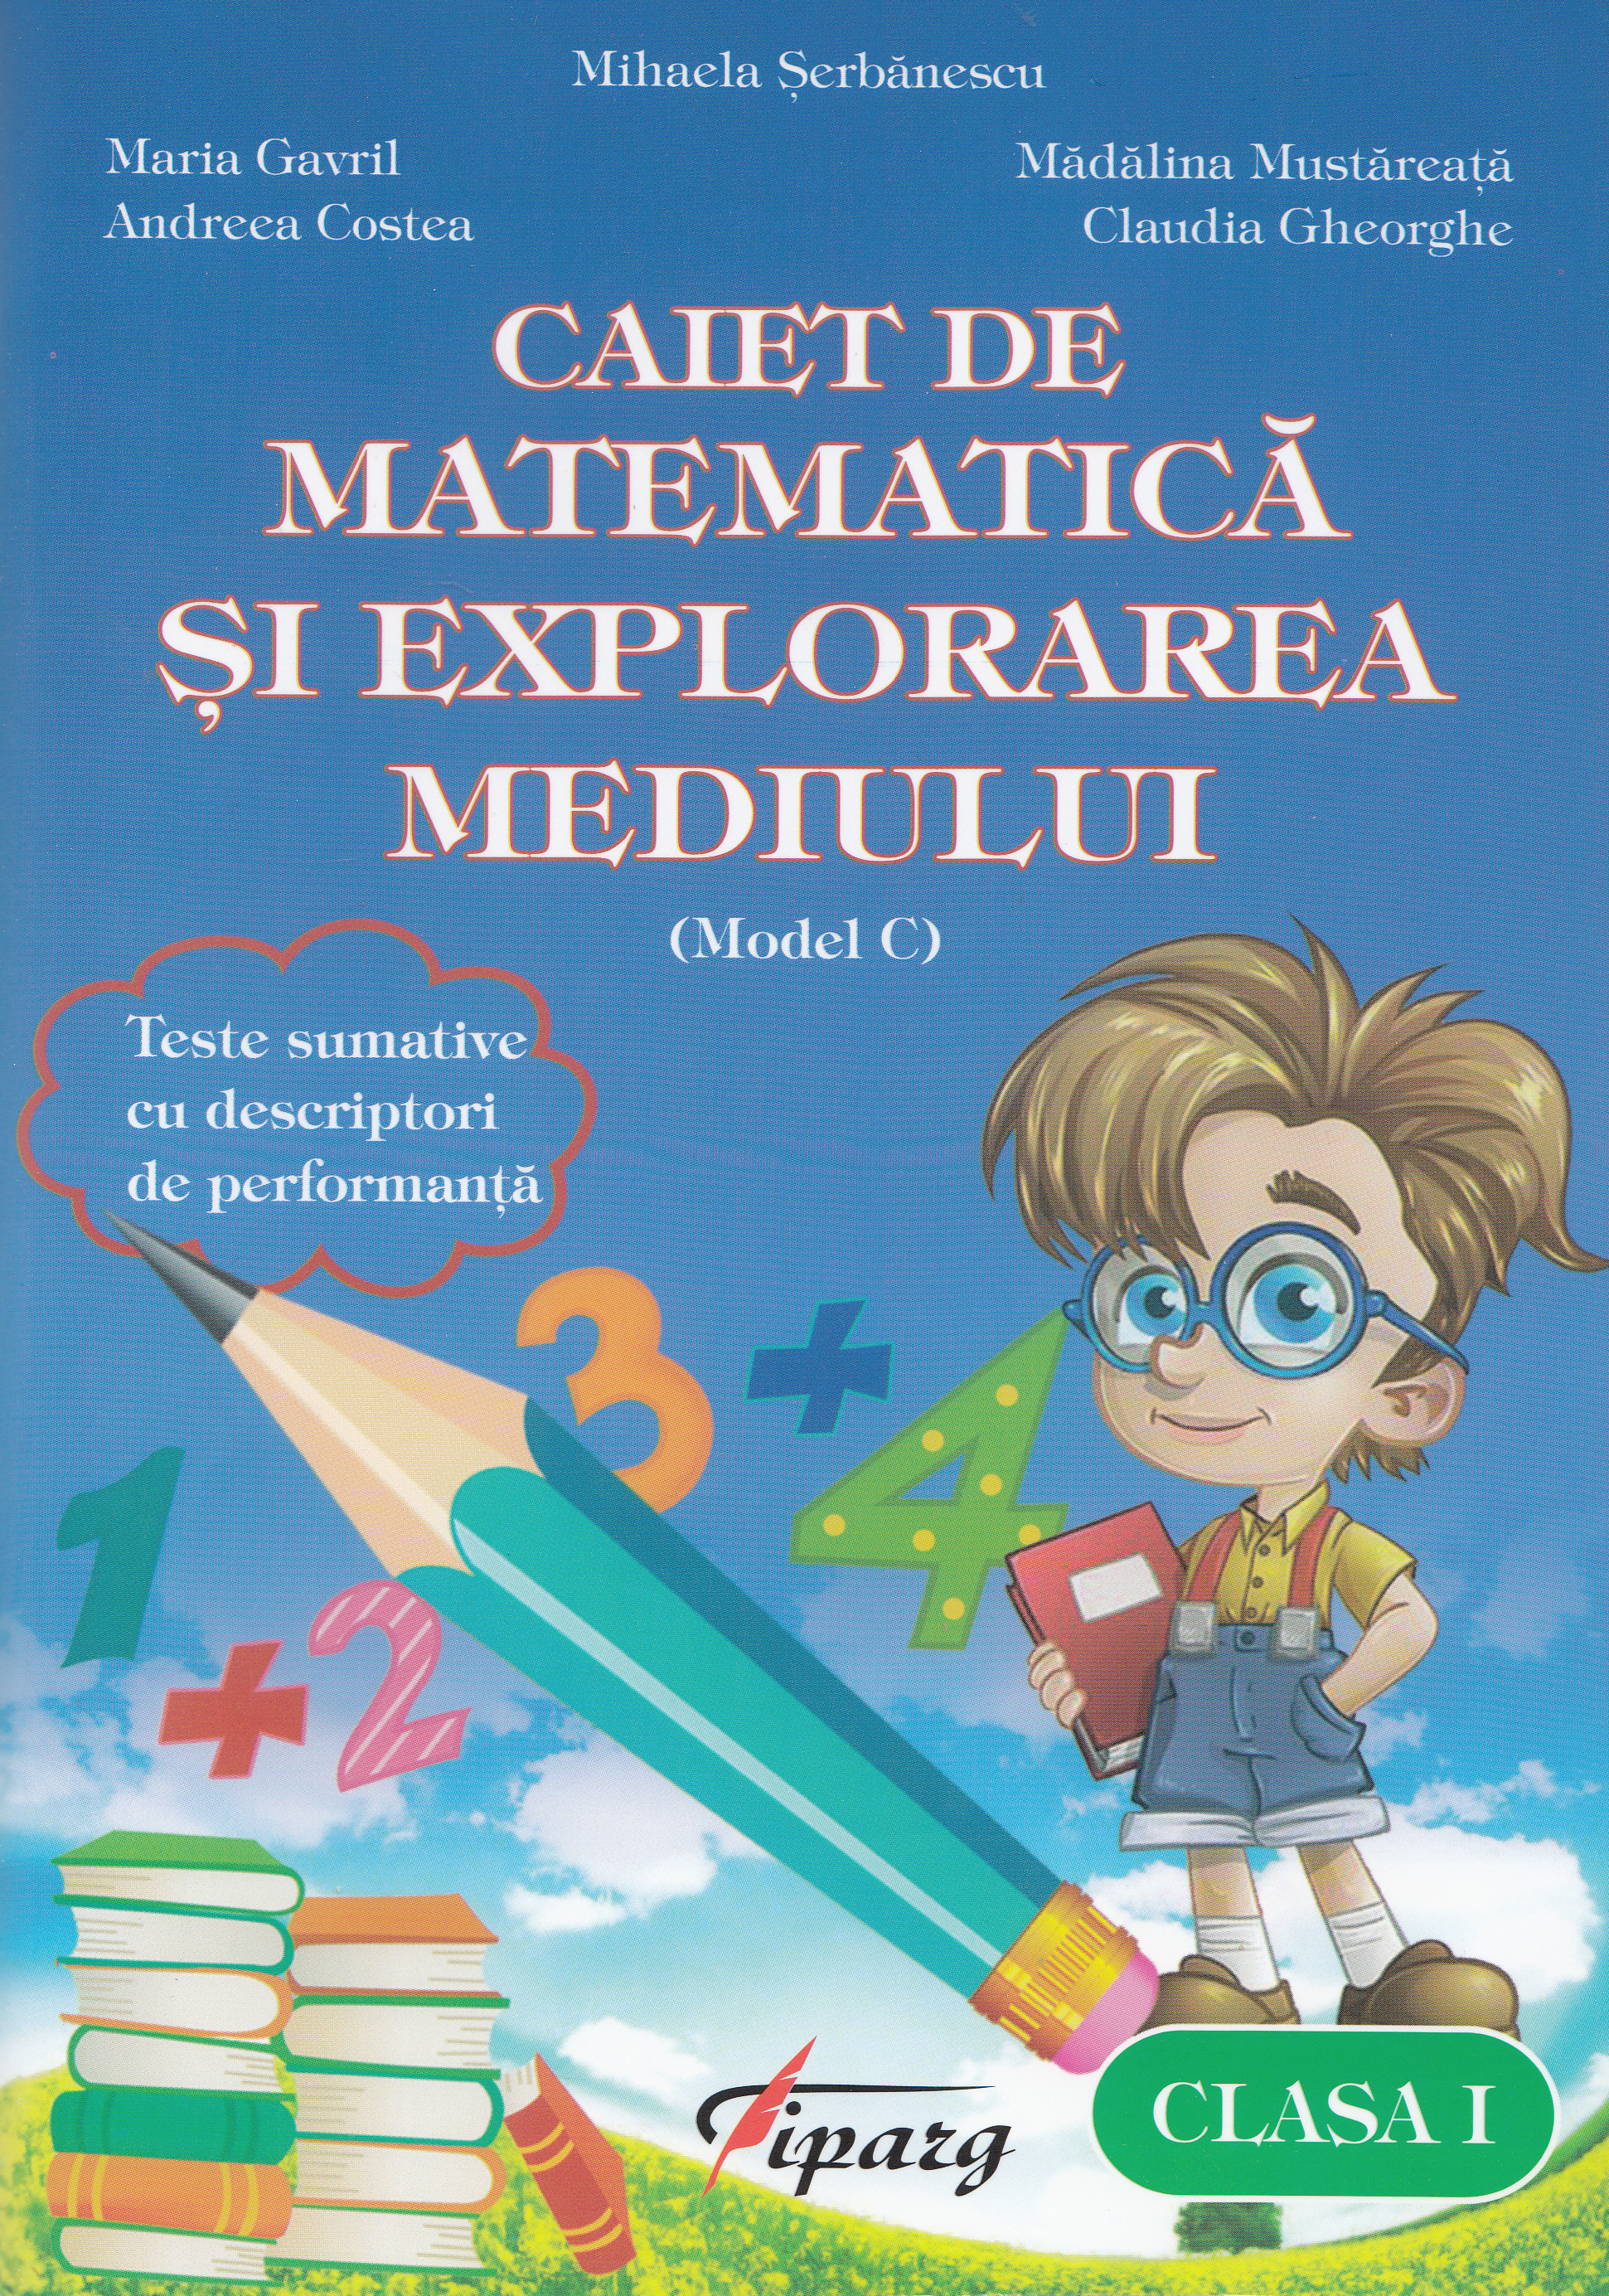 Matematica si explorarea mediului - Clasa a 1-a - Caiet (Model C) - Mihaela Serbanescu